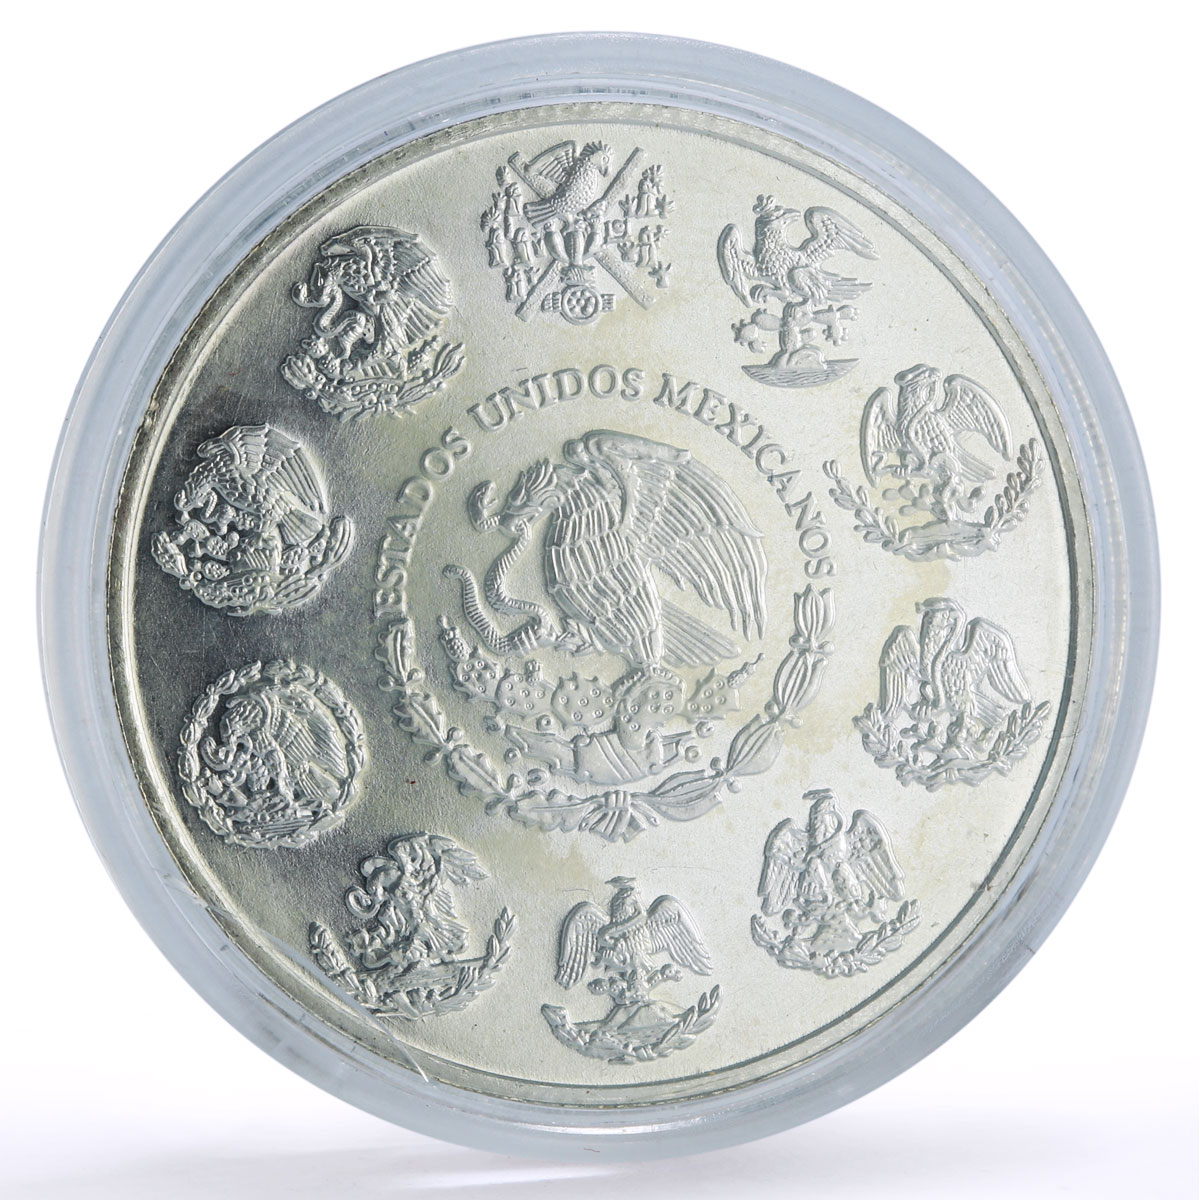 Mexico 5 pesos Conservation Wildlife Oso Negro Bear Fauna silver coin 2001